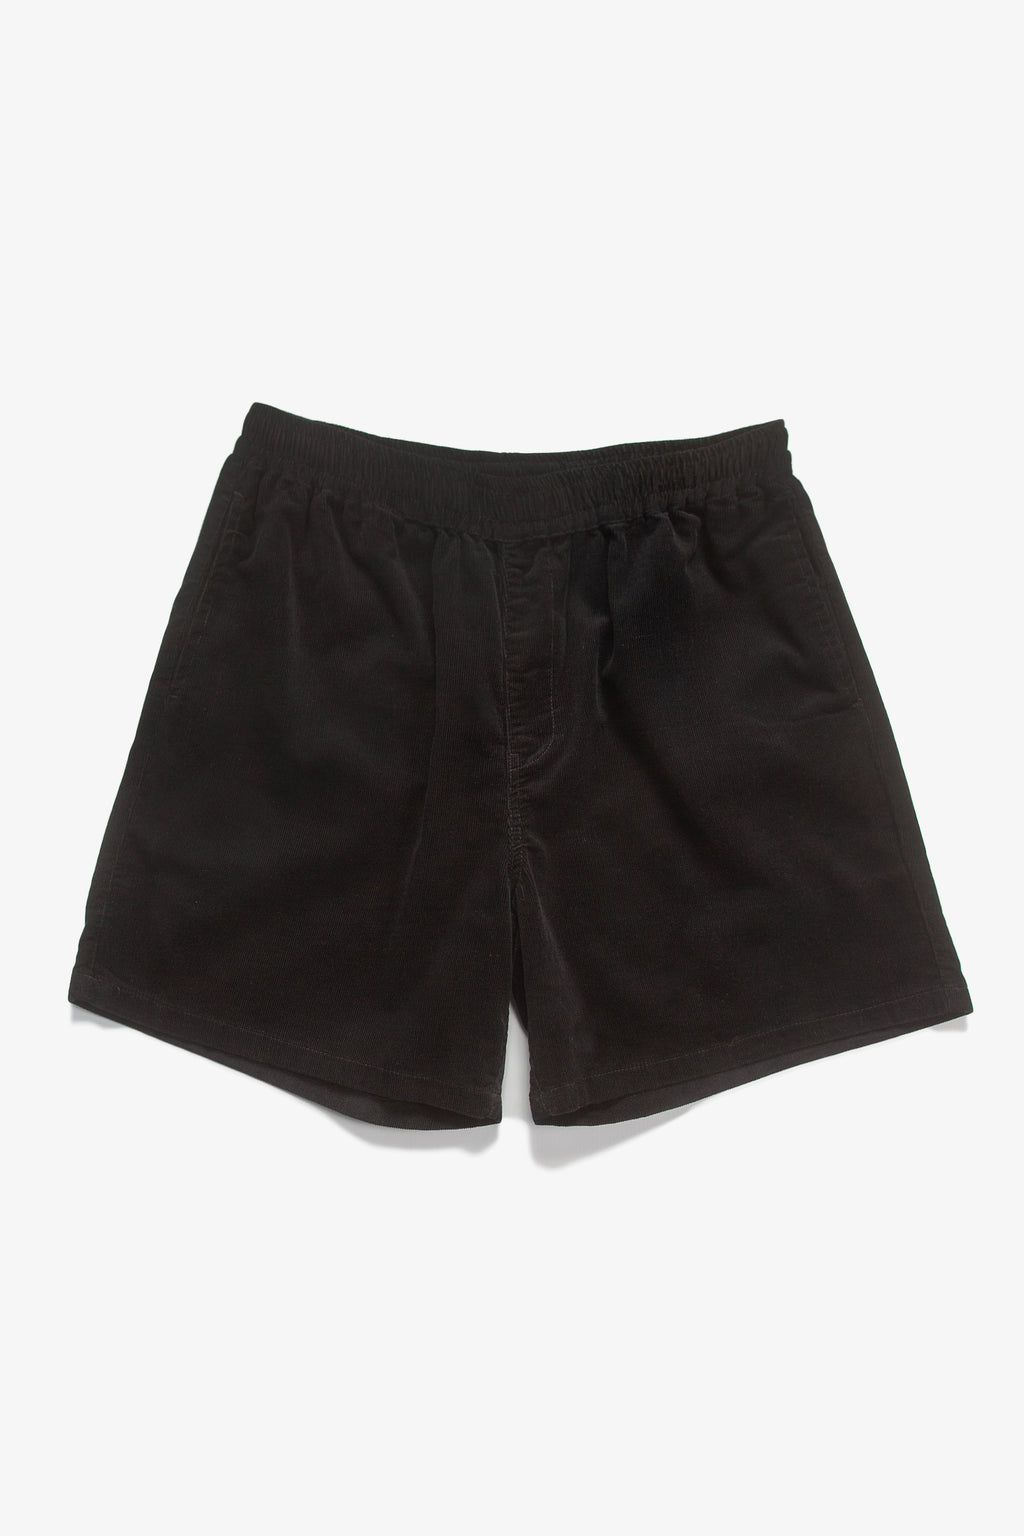 Blacksmith - Corduroy Easy Shorts - Black